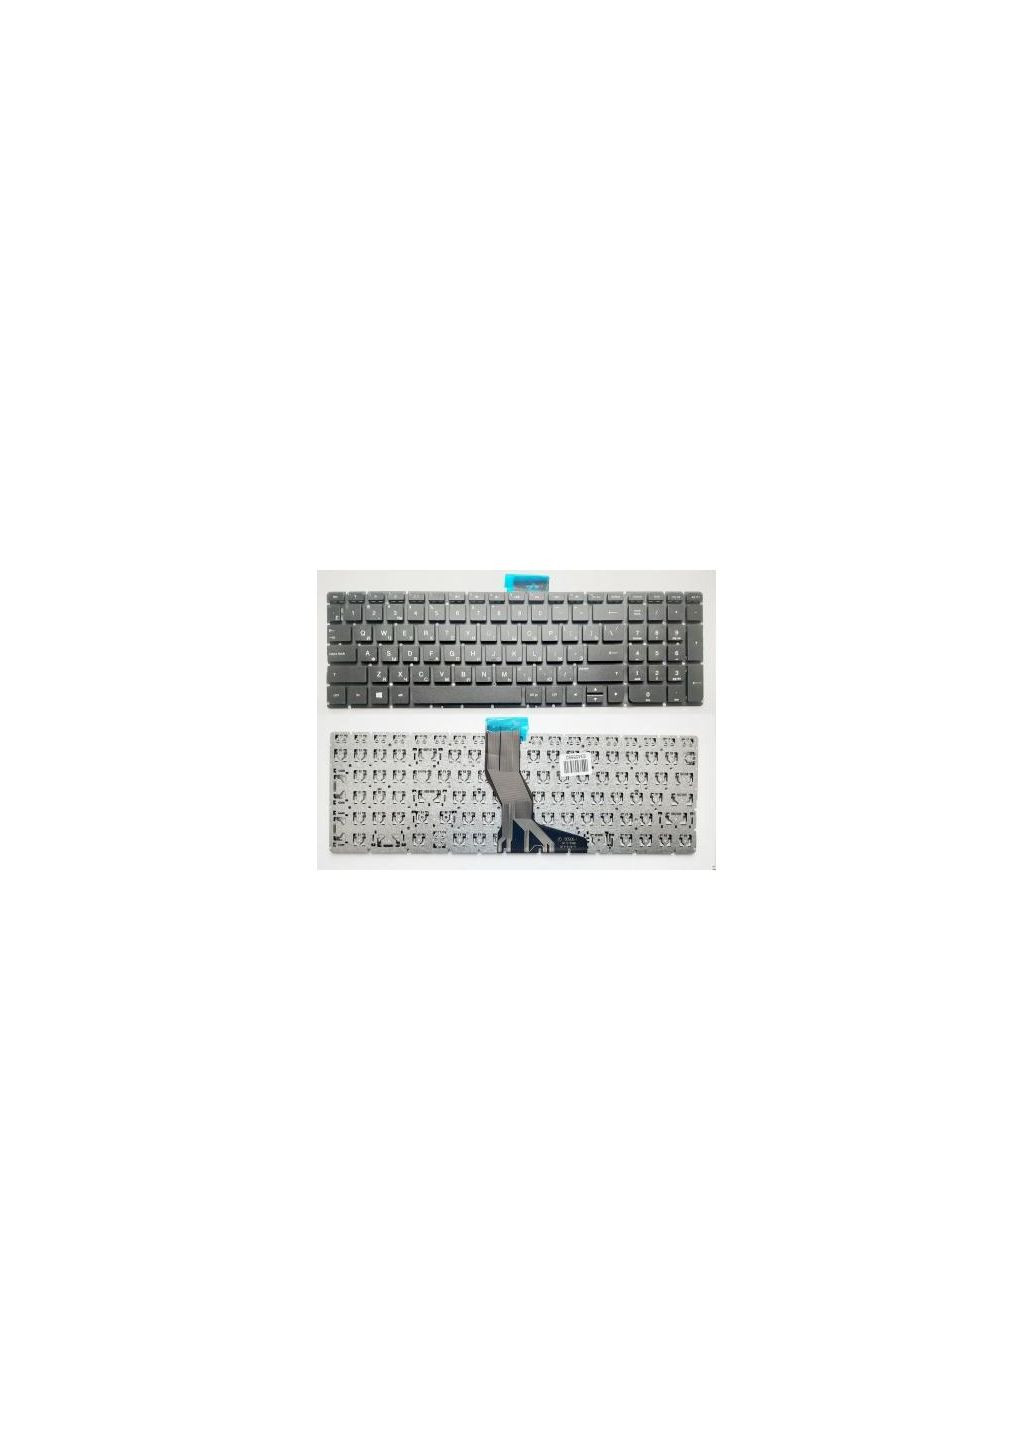 Клавиатура ноутбука Pavilion 15AB,15Z-AB,15-AK,15-BC,17-AB черн (A46019) HP pavilion 15-ab, 15z-ab, 15-ak, 15-bc, 17-ab черн (276707708)